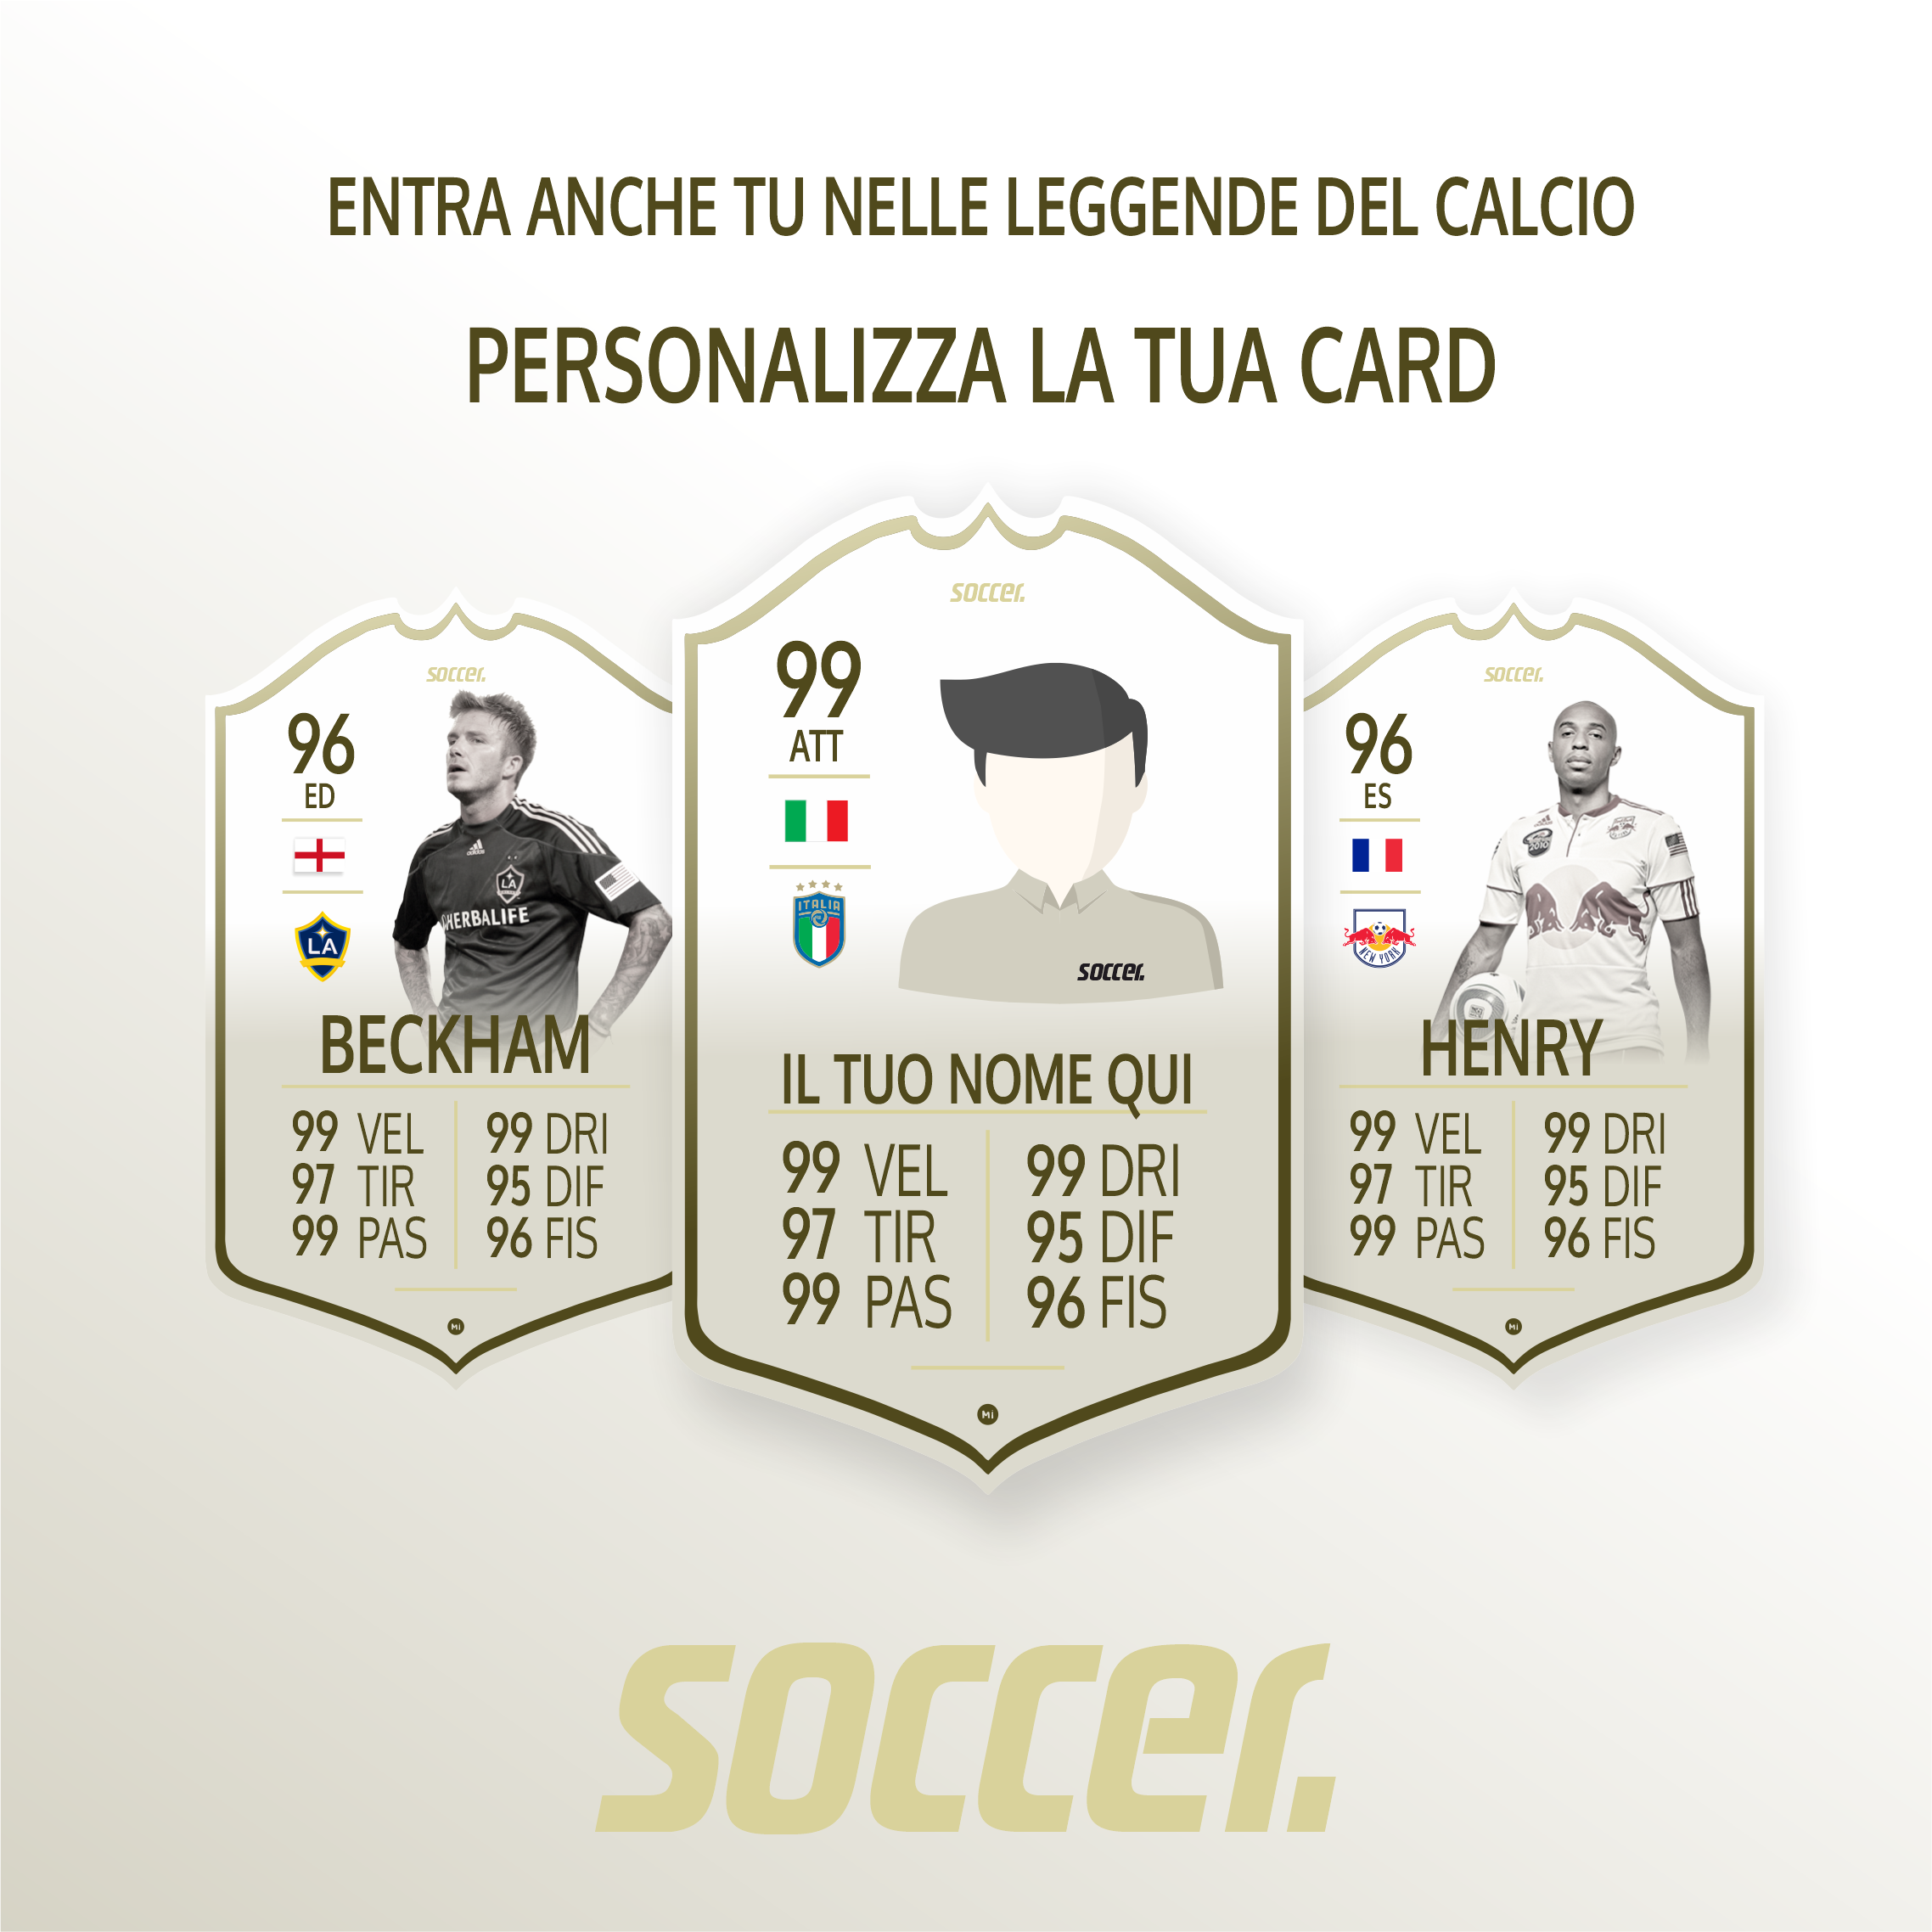 Beckham FIFA FUT CARDS - MLS MAGAZINE ITALIA